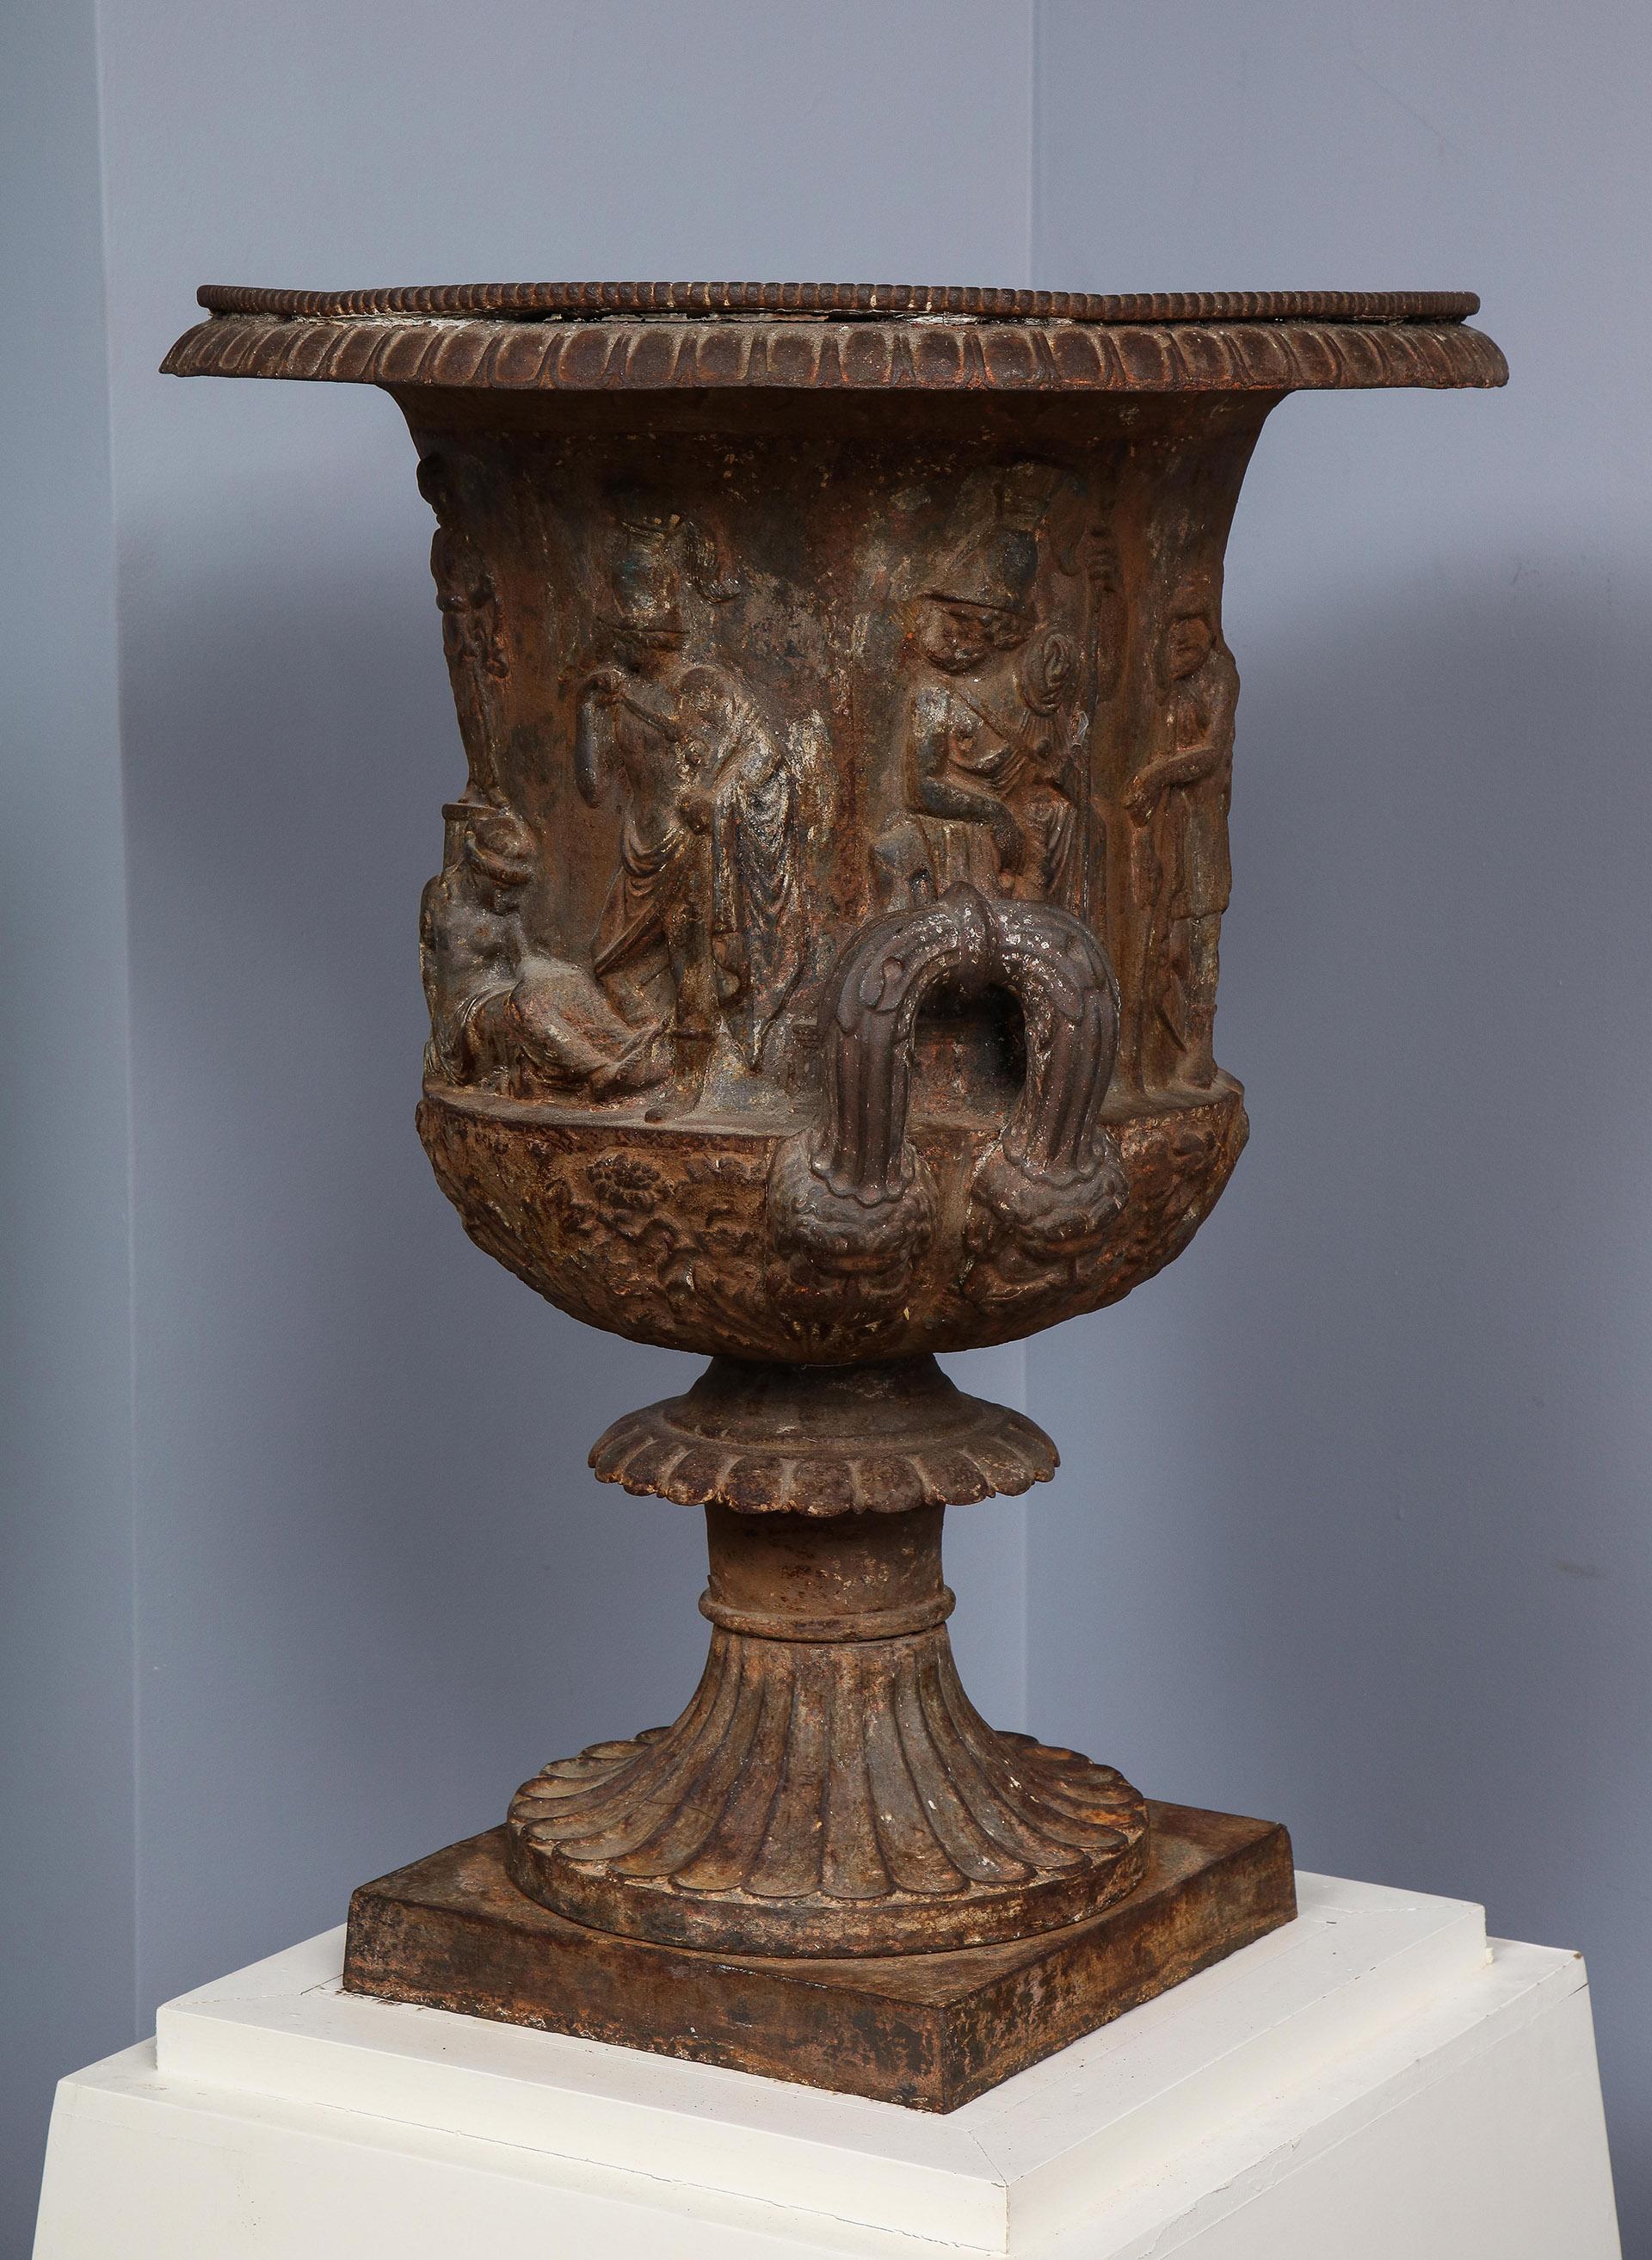 Eiserne Urne, nach der Medici-Urne in der Uffizien-Galerie

Eiserne Urne nach der Medici-Urne aus der Sammlung der Uffizien. Mit einer vergoldeten Lippe, mit einem mythologischen Flachrelief einer weiblichen Figur, die unter einer Statue einer